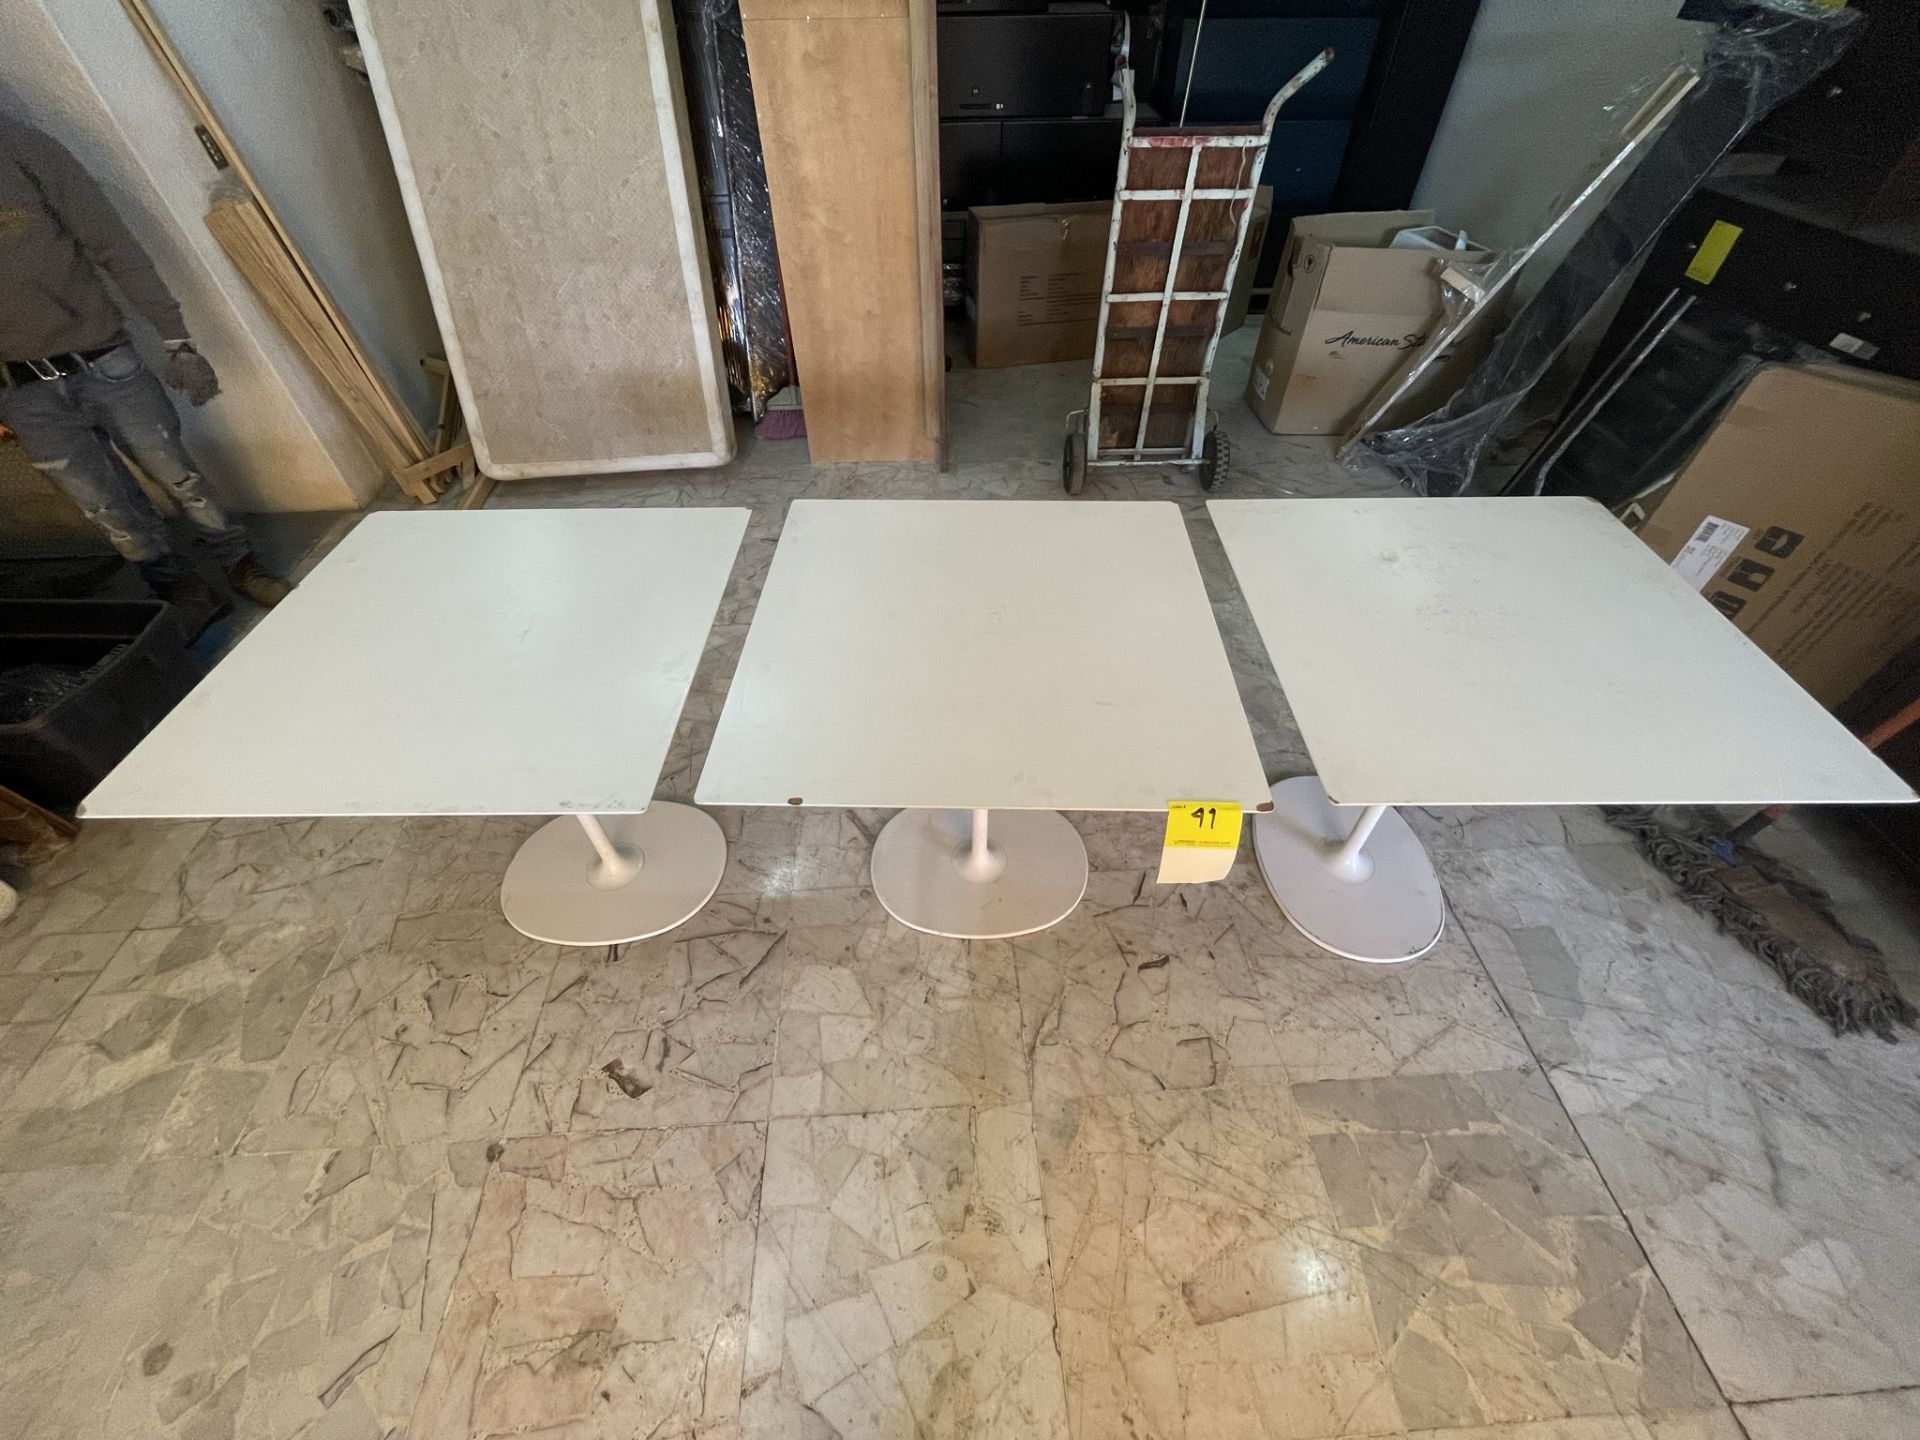 Lote de 3 mesas de madera con base de metal de 80 x 80 x 74, Color BLANCO (Favor de inspecciona